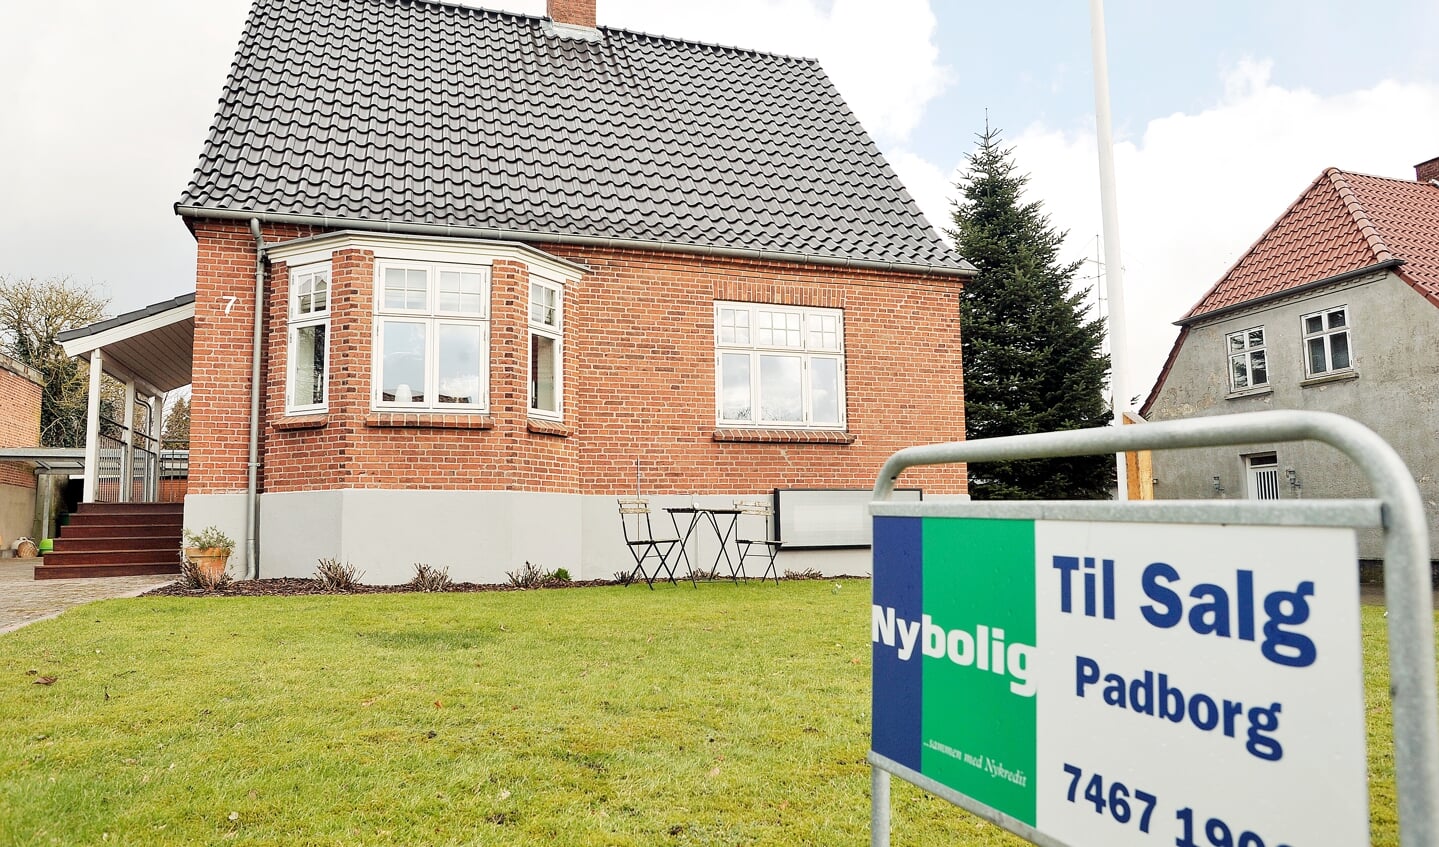 Regionskontoret oplever et stigende antal henvendelser fra tyskere, der ønsker at købe hus i Danmark.
Foto: 